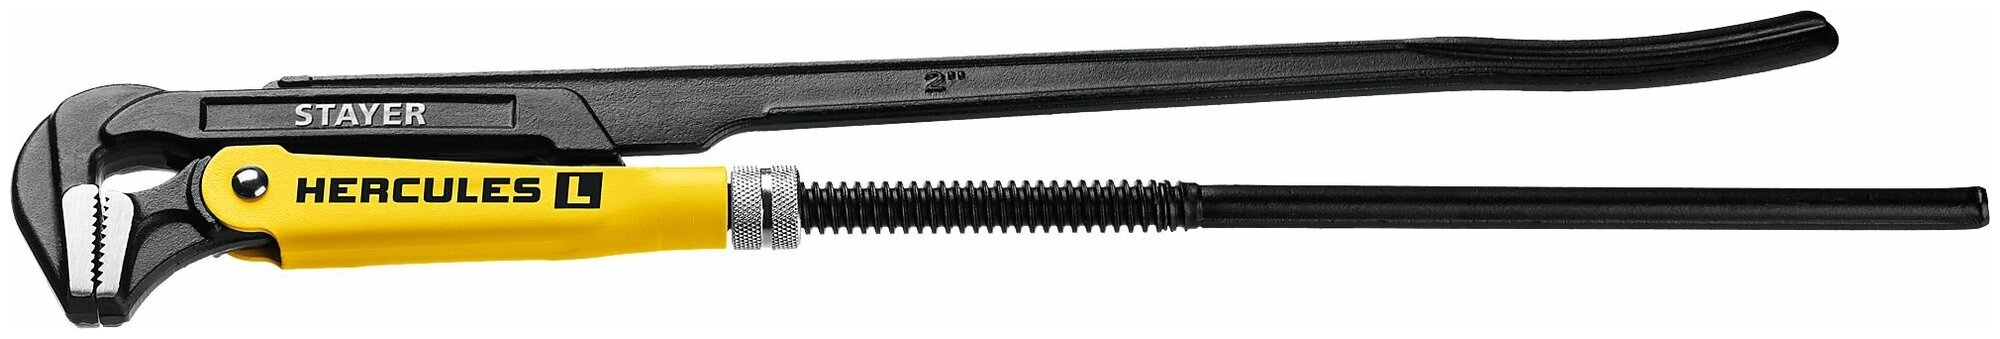 STAYER HERCULES-L, №3, 2, 560 мм, Трубный ключ с прямыми губками (27331-3)